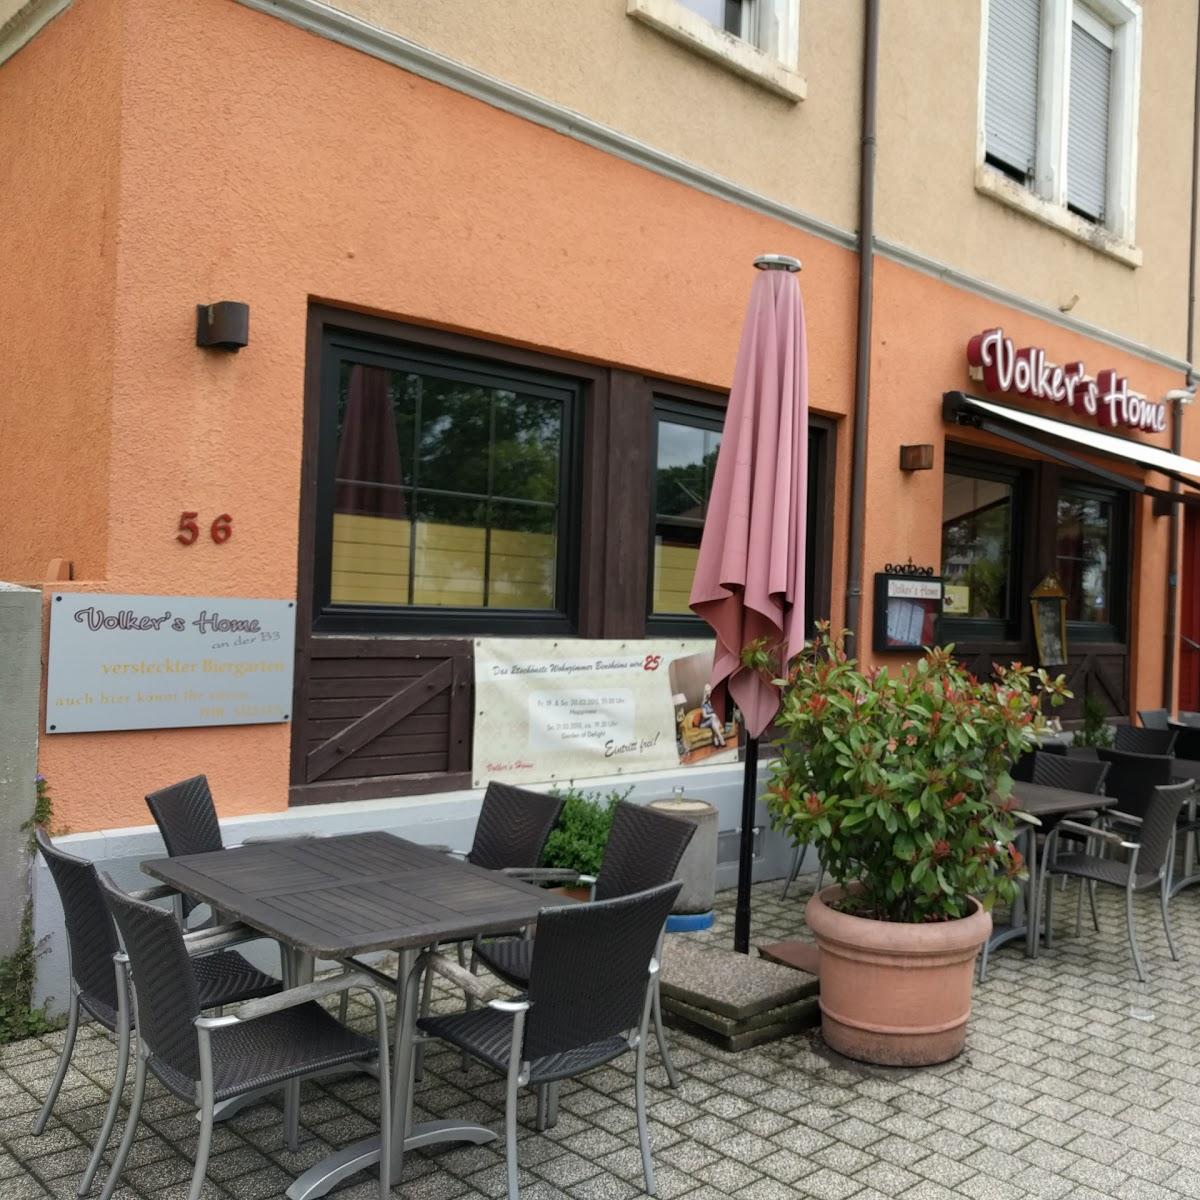 Restaurant "Volker